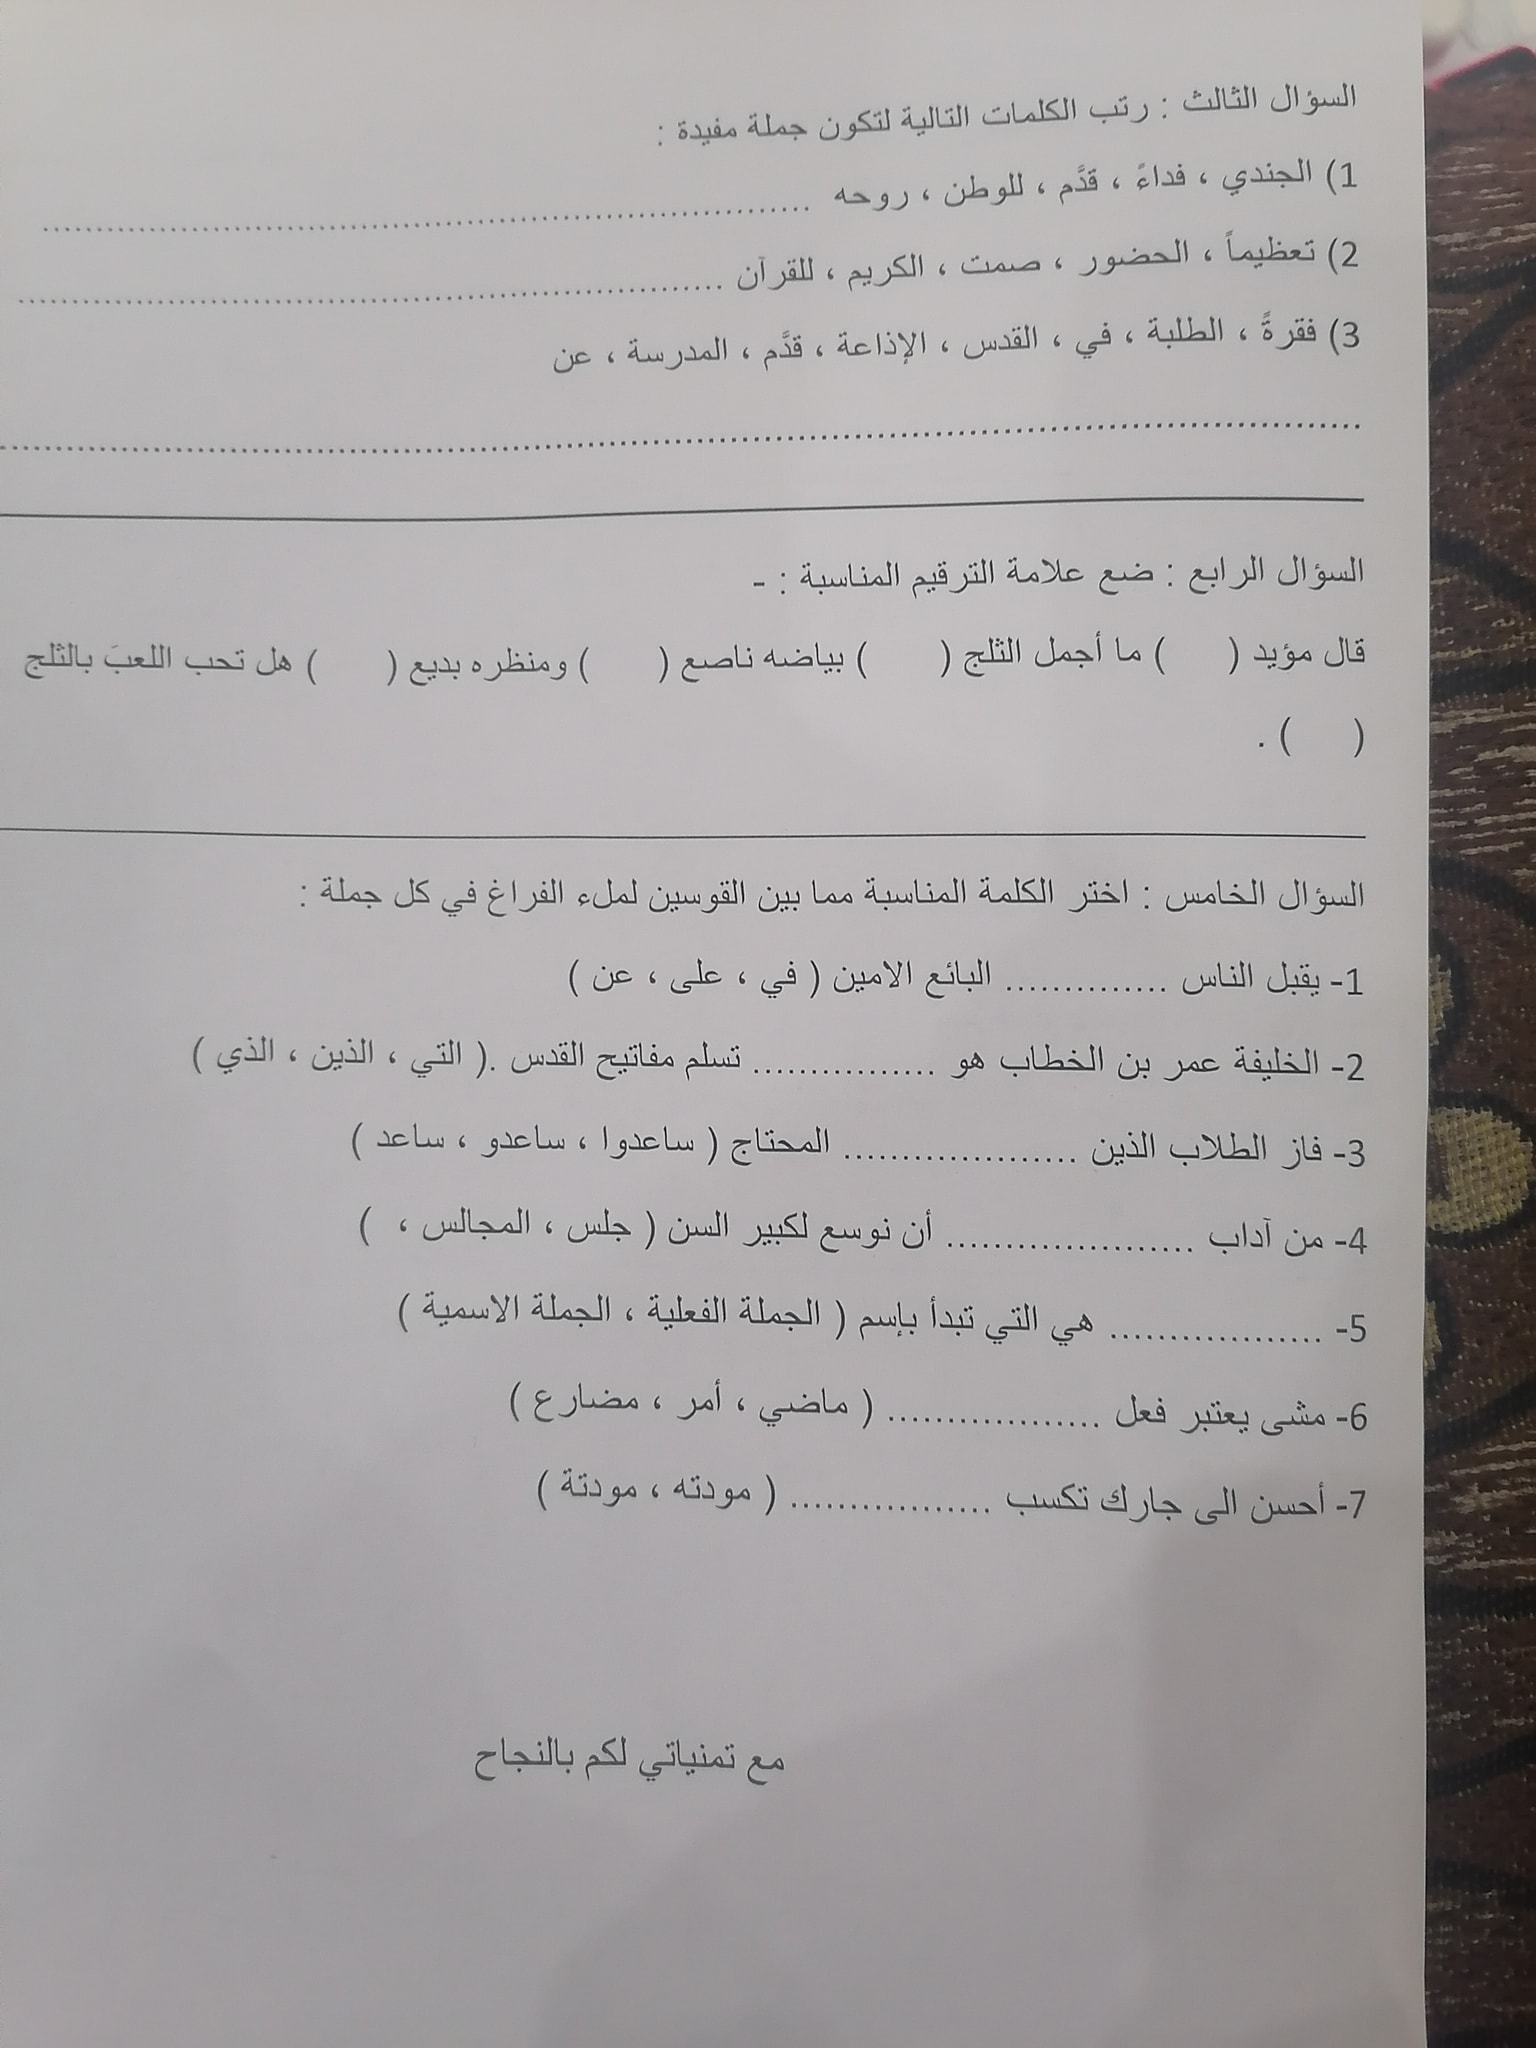 2 صور امتحان نهائي لمادة اللغة العربية للصف الرابع الفصل الاول 2021.jpg